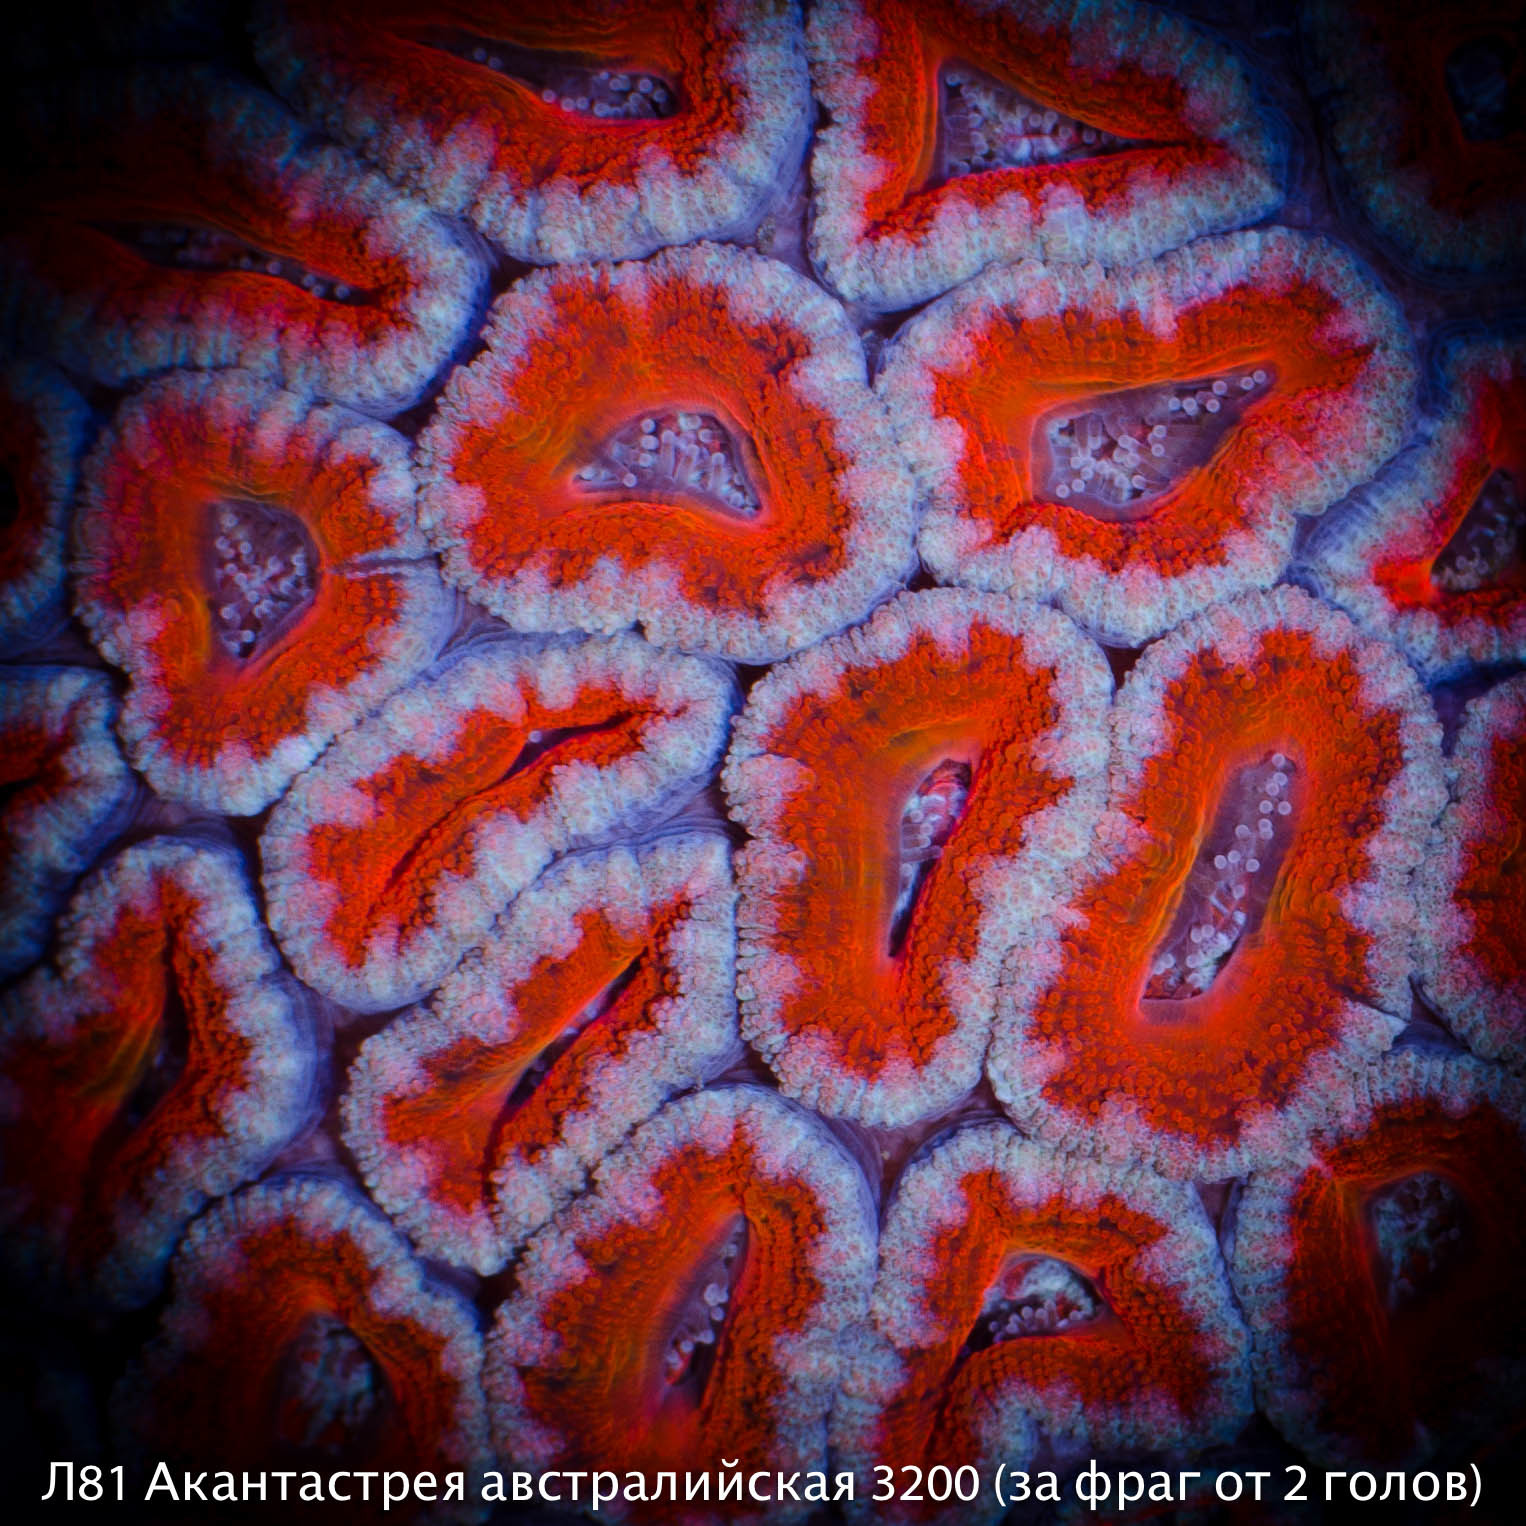 Л81 Акантастрея австралийская Acanthastrea lordhowensis 3200 (за фраг от 2 голов)